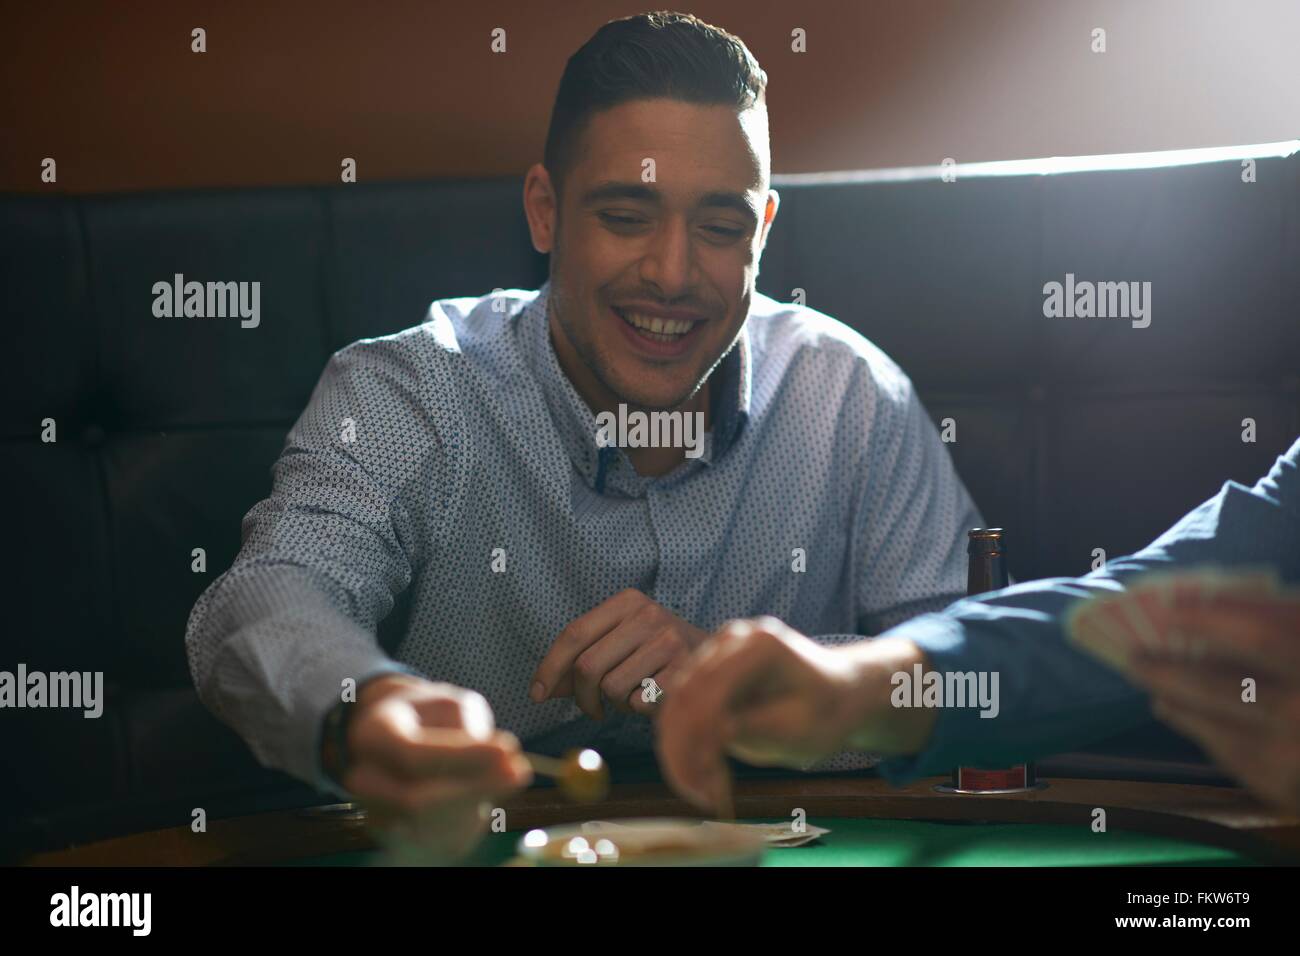 Man gambling key playing card game at pub card table Stock Photo